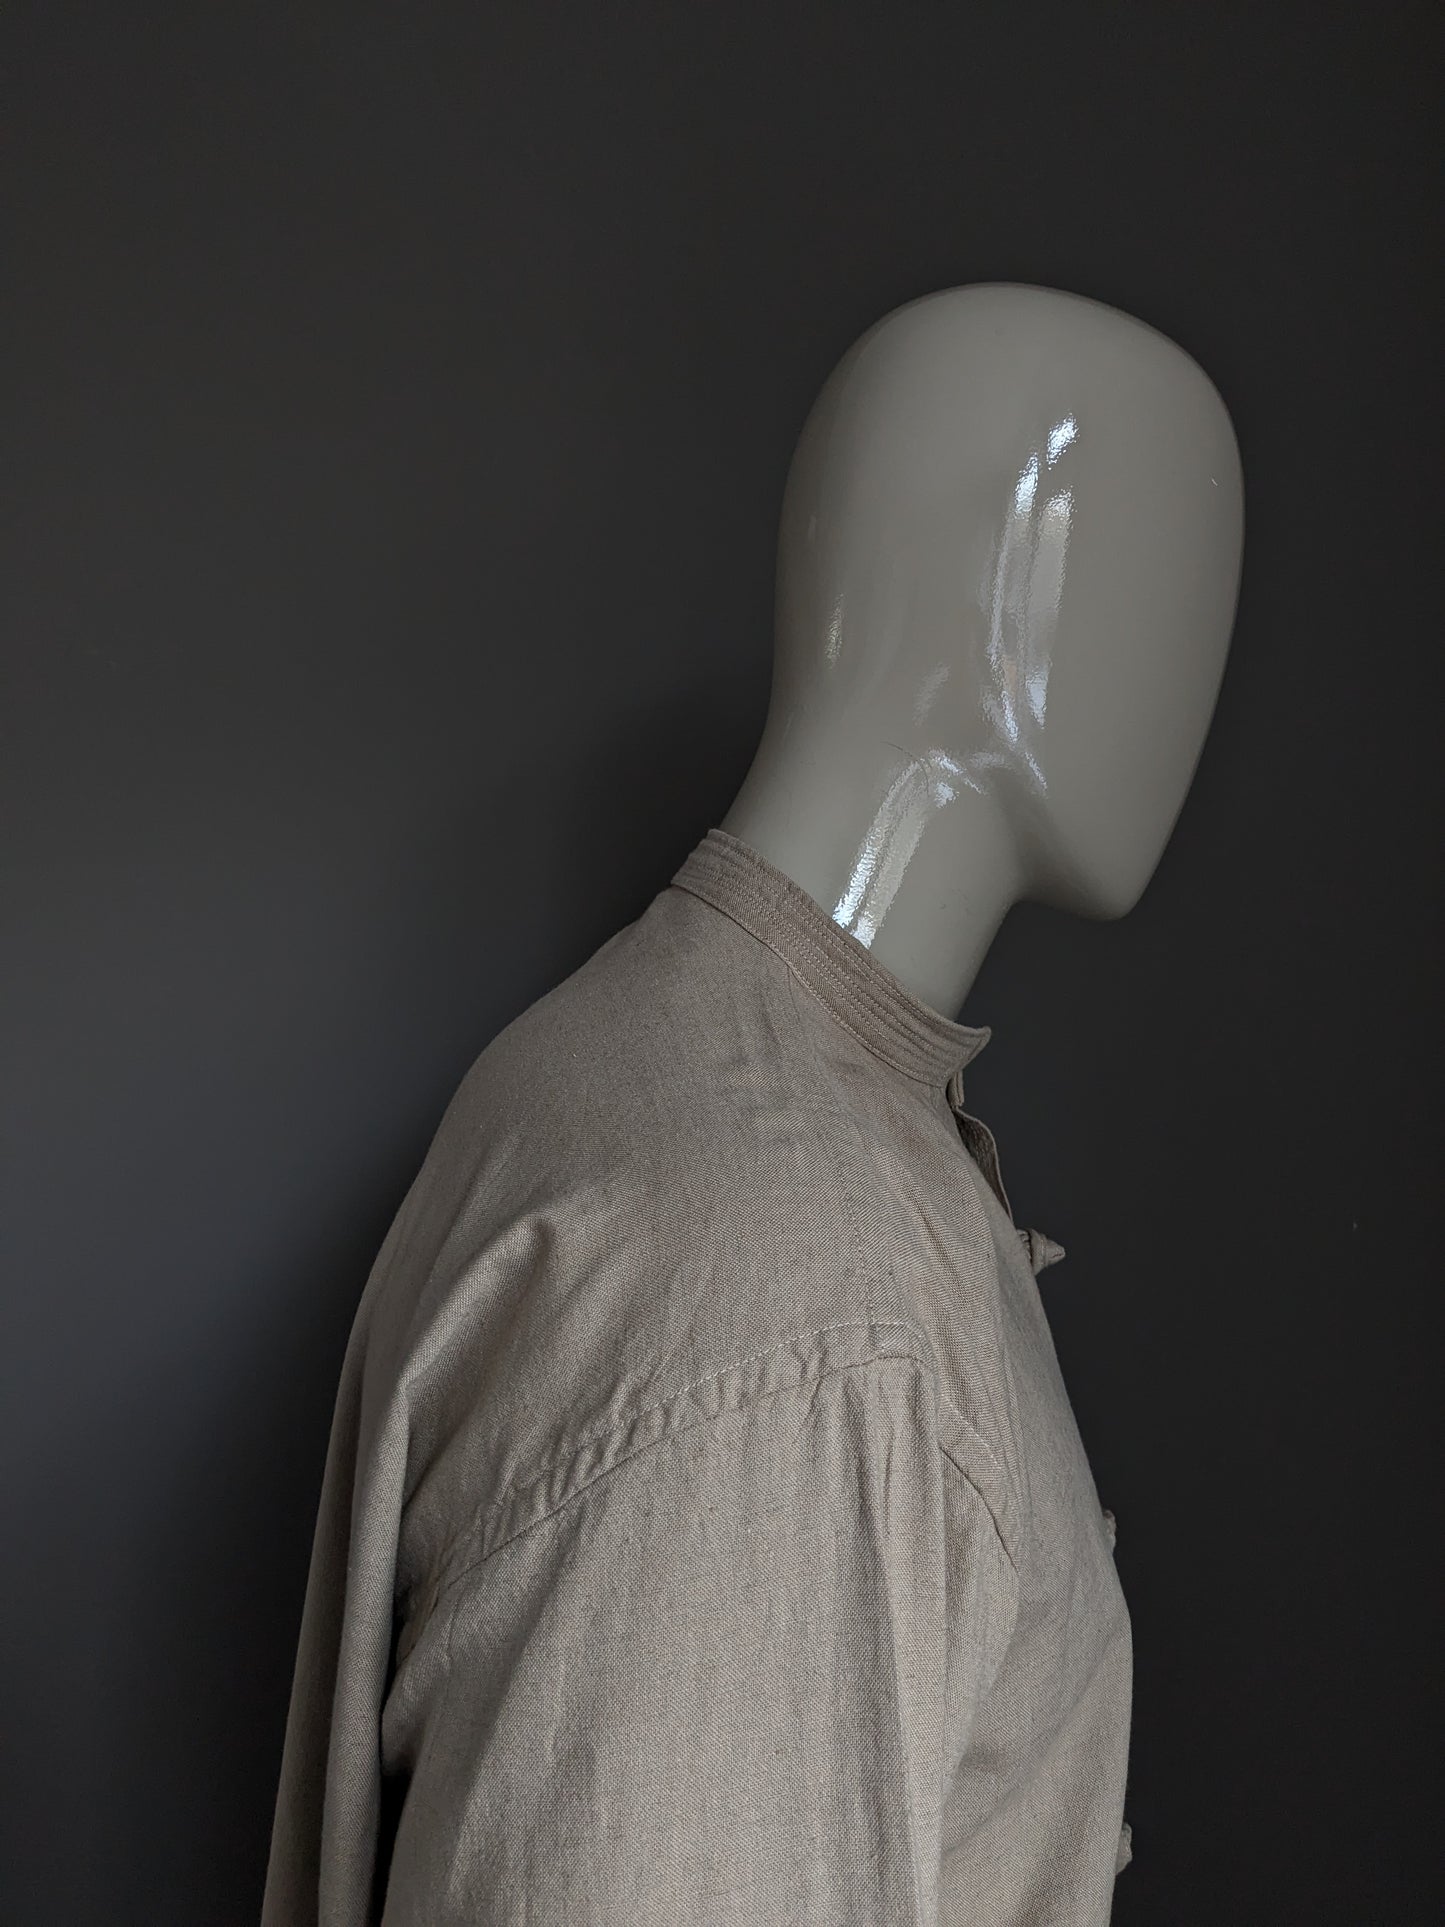 Camisa vintage con botones de tela y collar MAO / elevado / agricultor. Color beige. Tamaño 2xl / xxl.